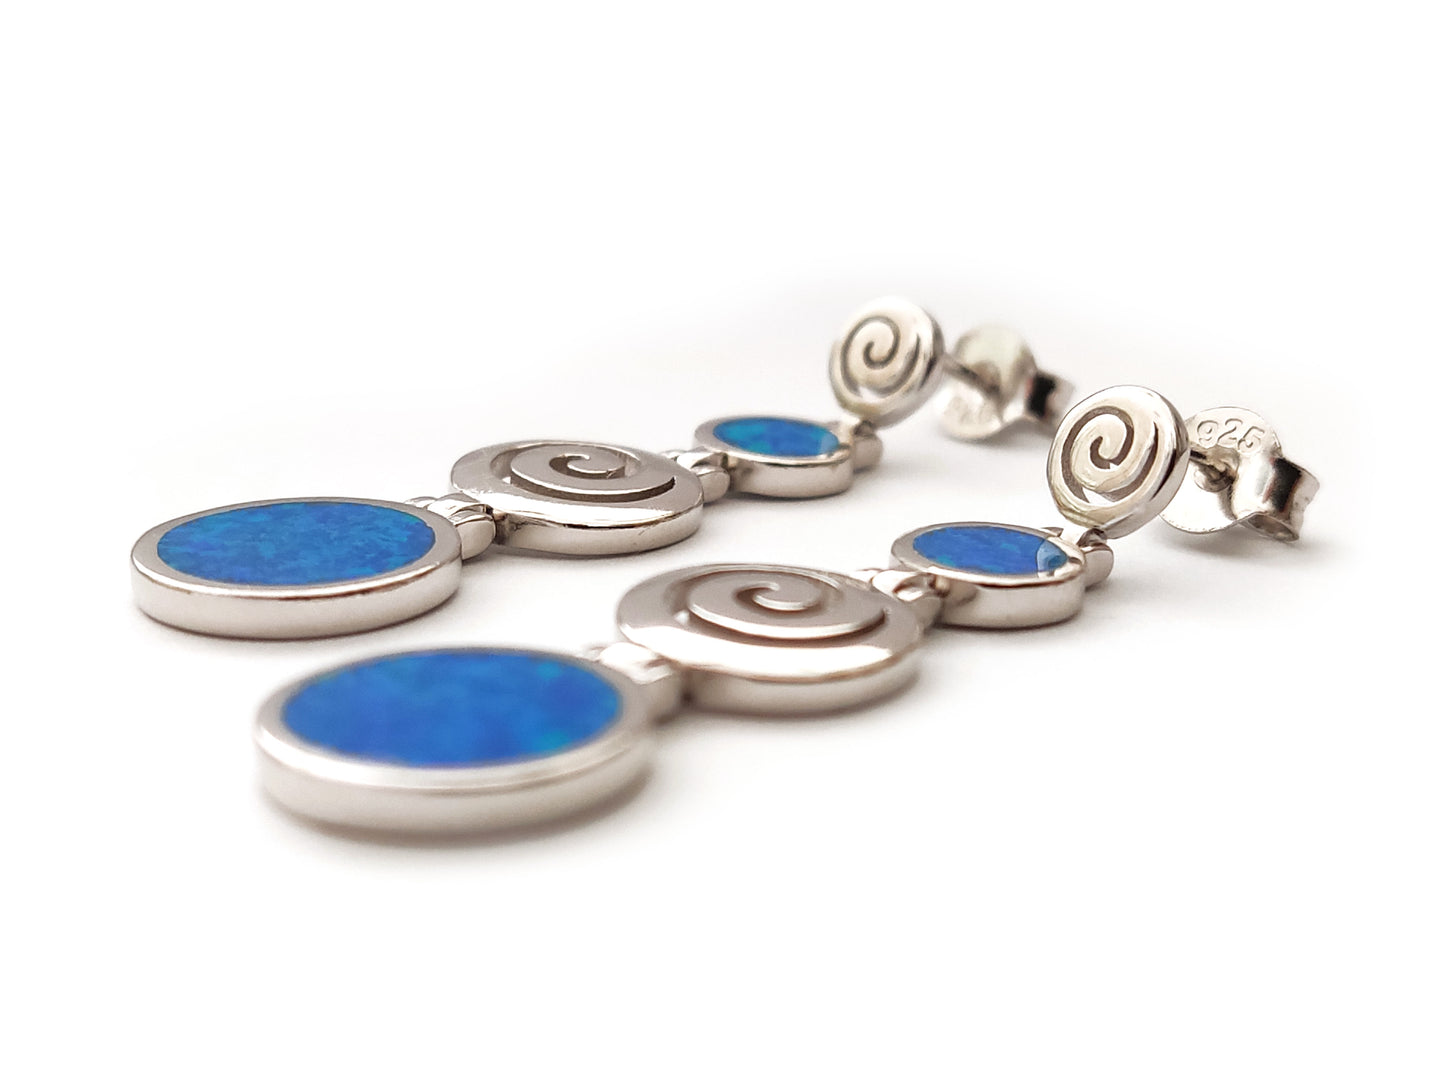 Greek Spiral Blue Opal Stones Long Dangle Silver Earrings